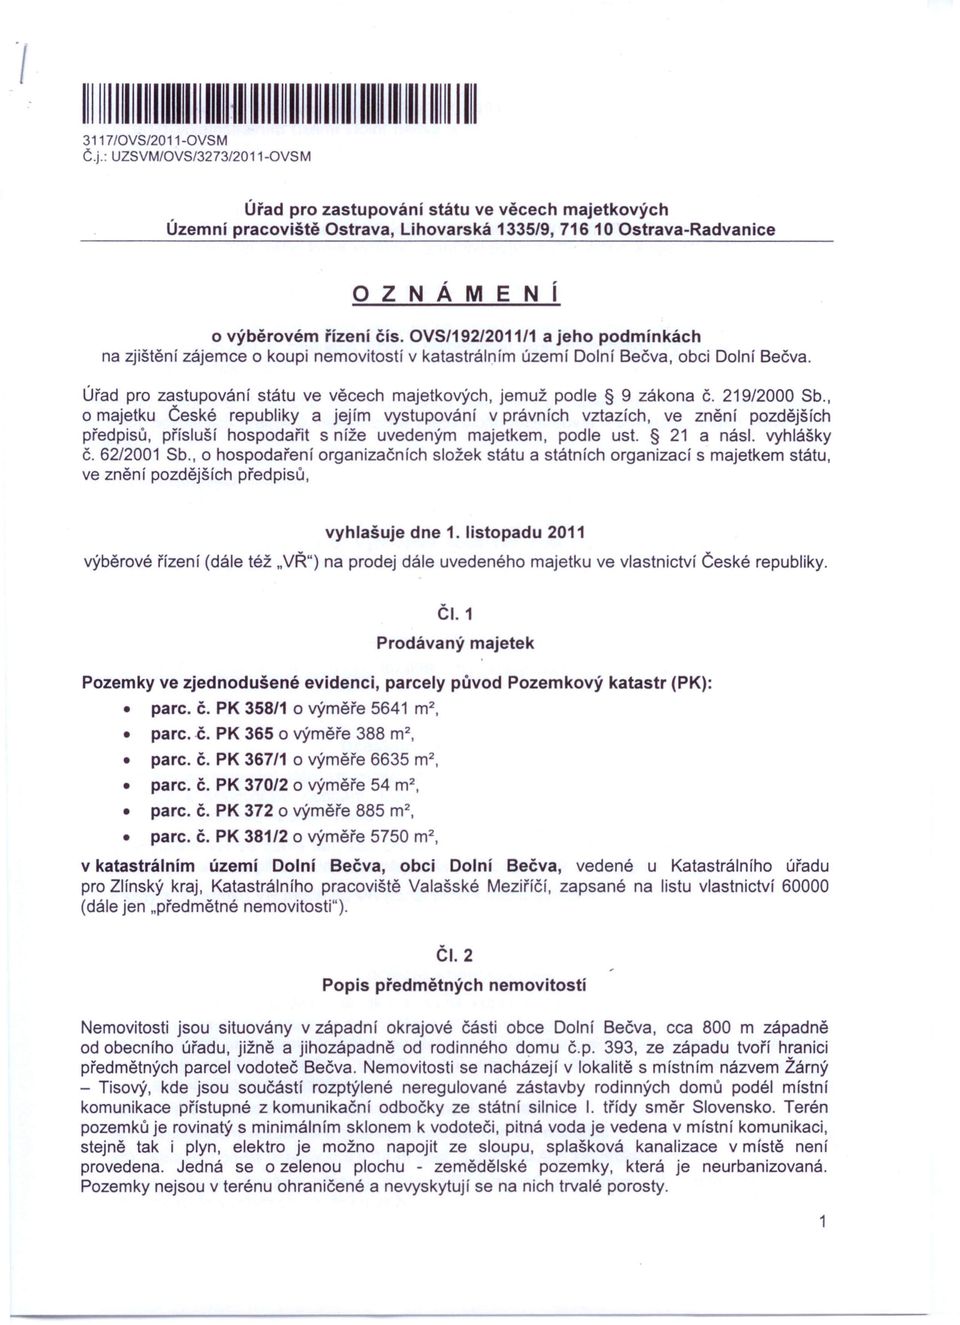 OVS/192/2011/1 a jeho podmínkách na zjištění zájemce o koupi nemovitostí v katastrálním území Dolní Bečva, obci Dolní Bečva., jemuž podle 9 zákona Č. 219/2000 Sb.